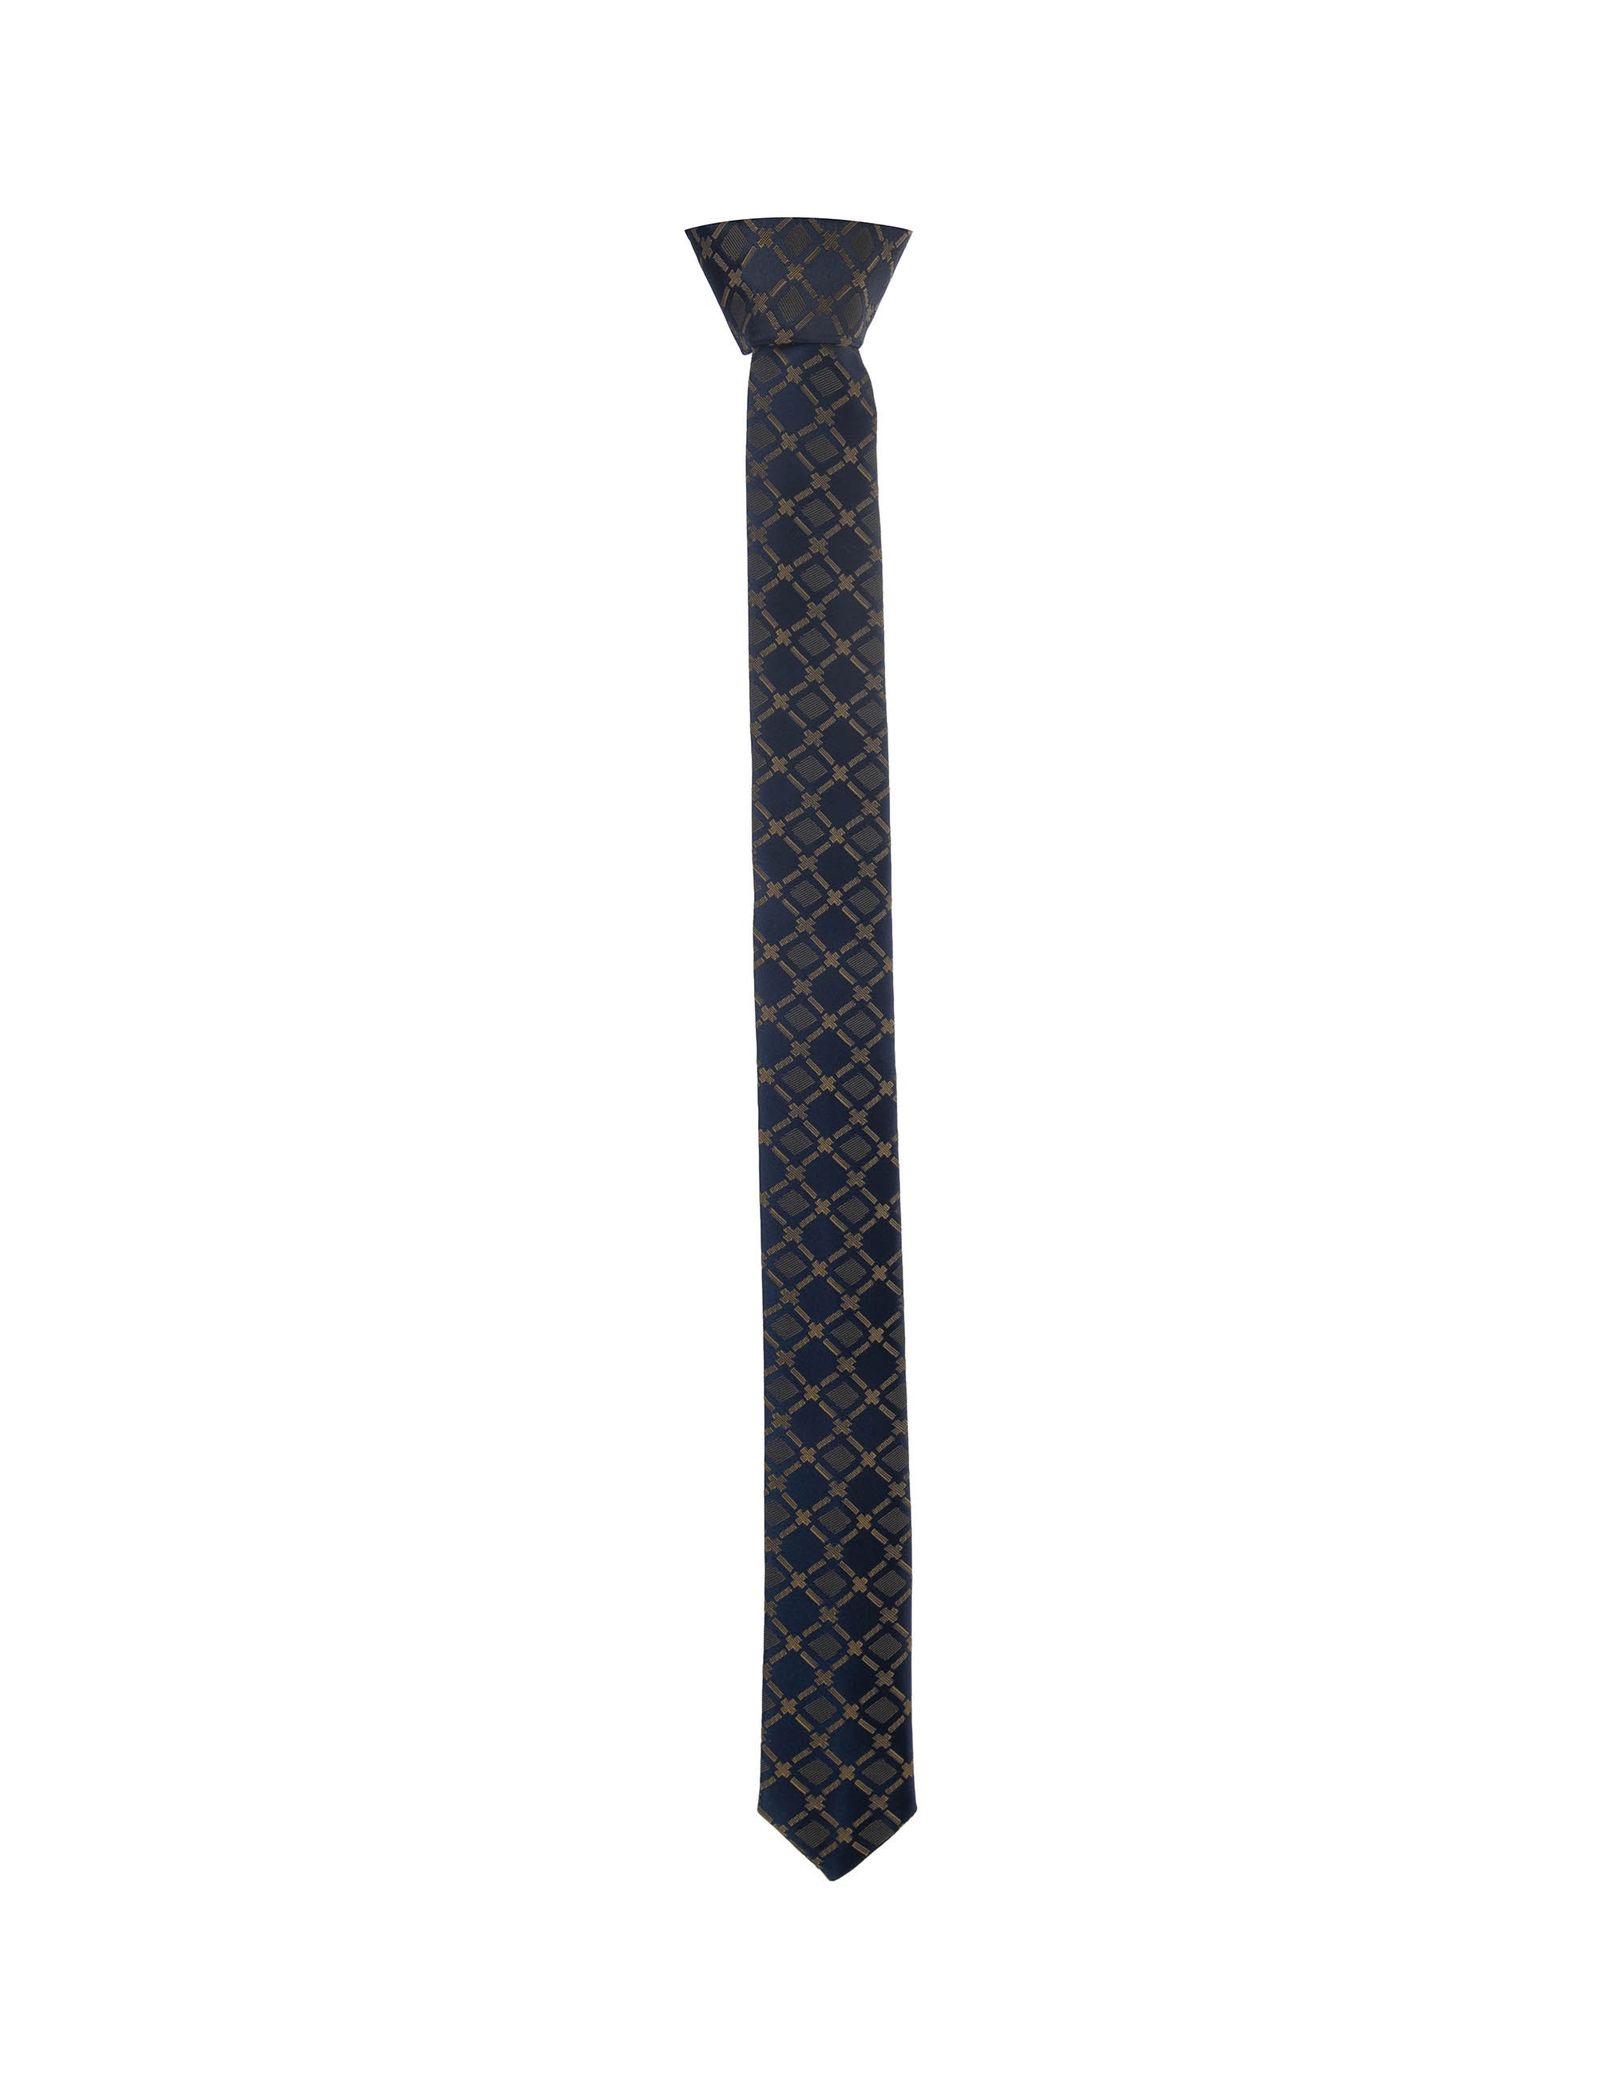 کراوات طرح دار مردانه طرح واید - پاترون تک سایز - چند رنگ - 2